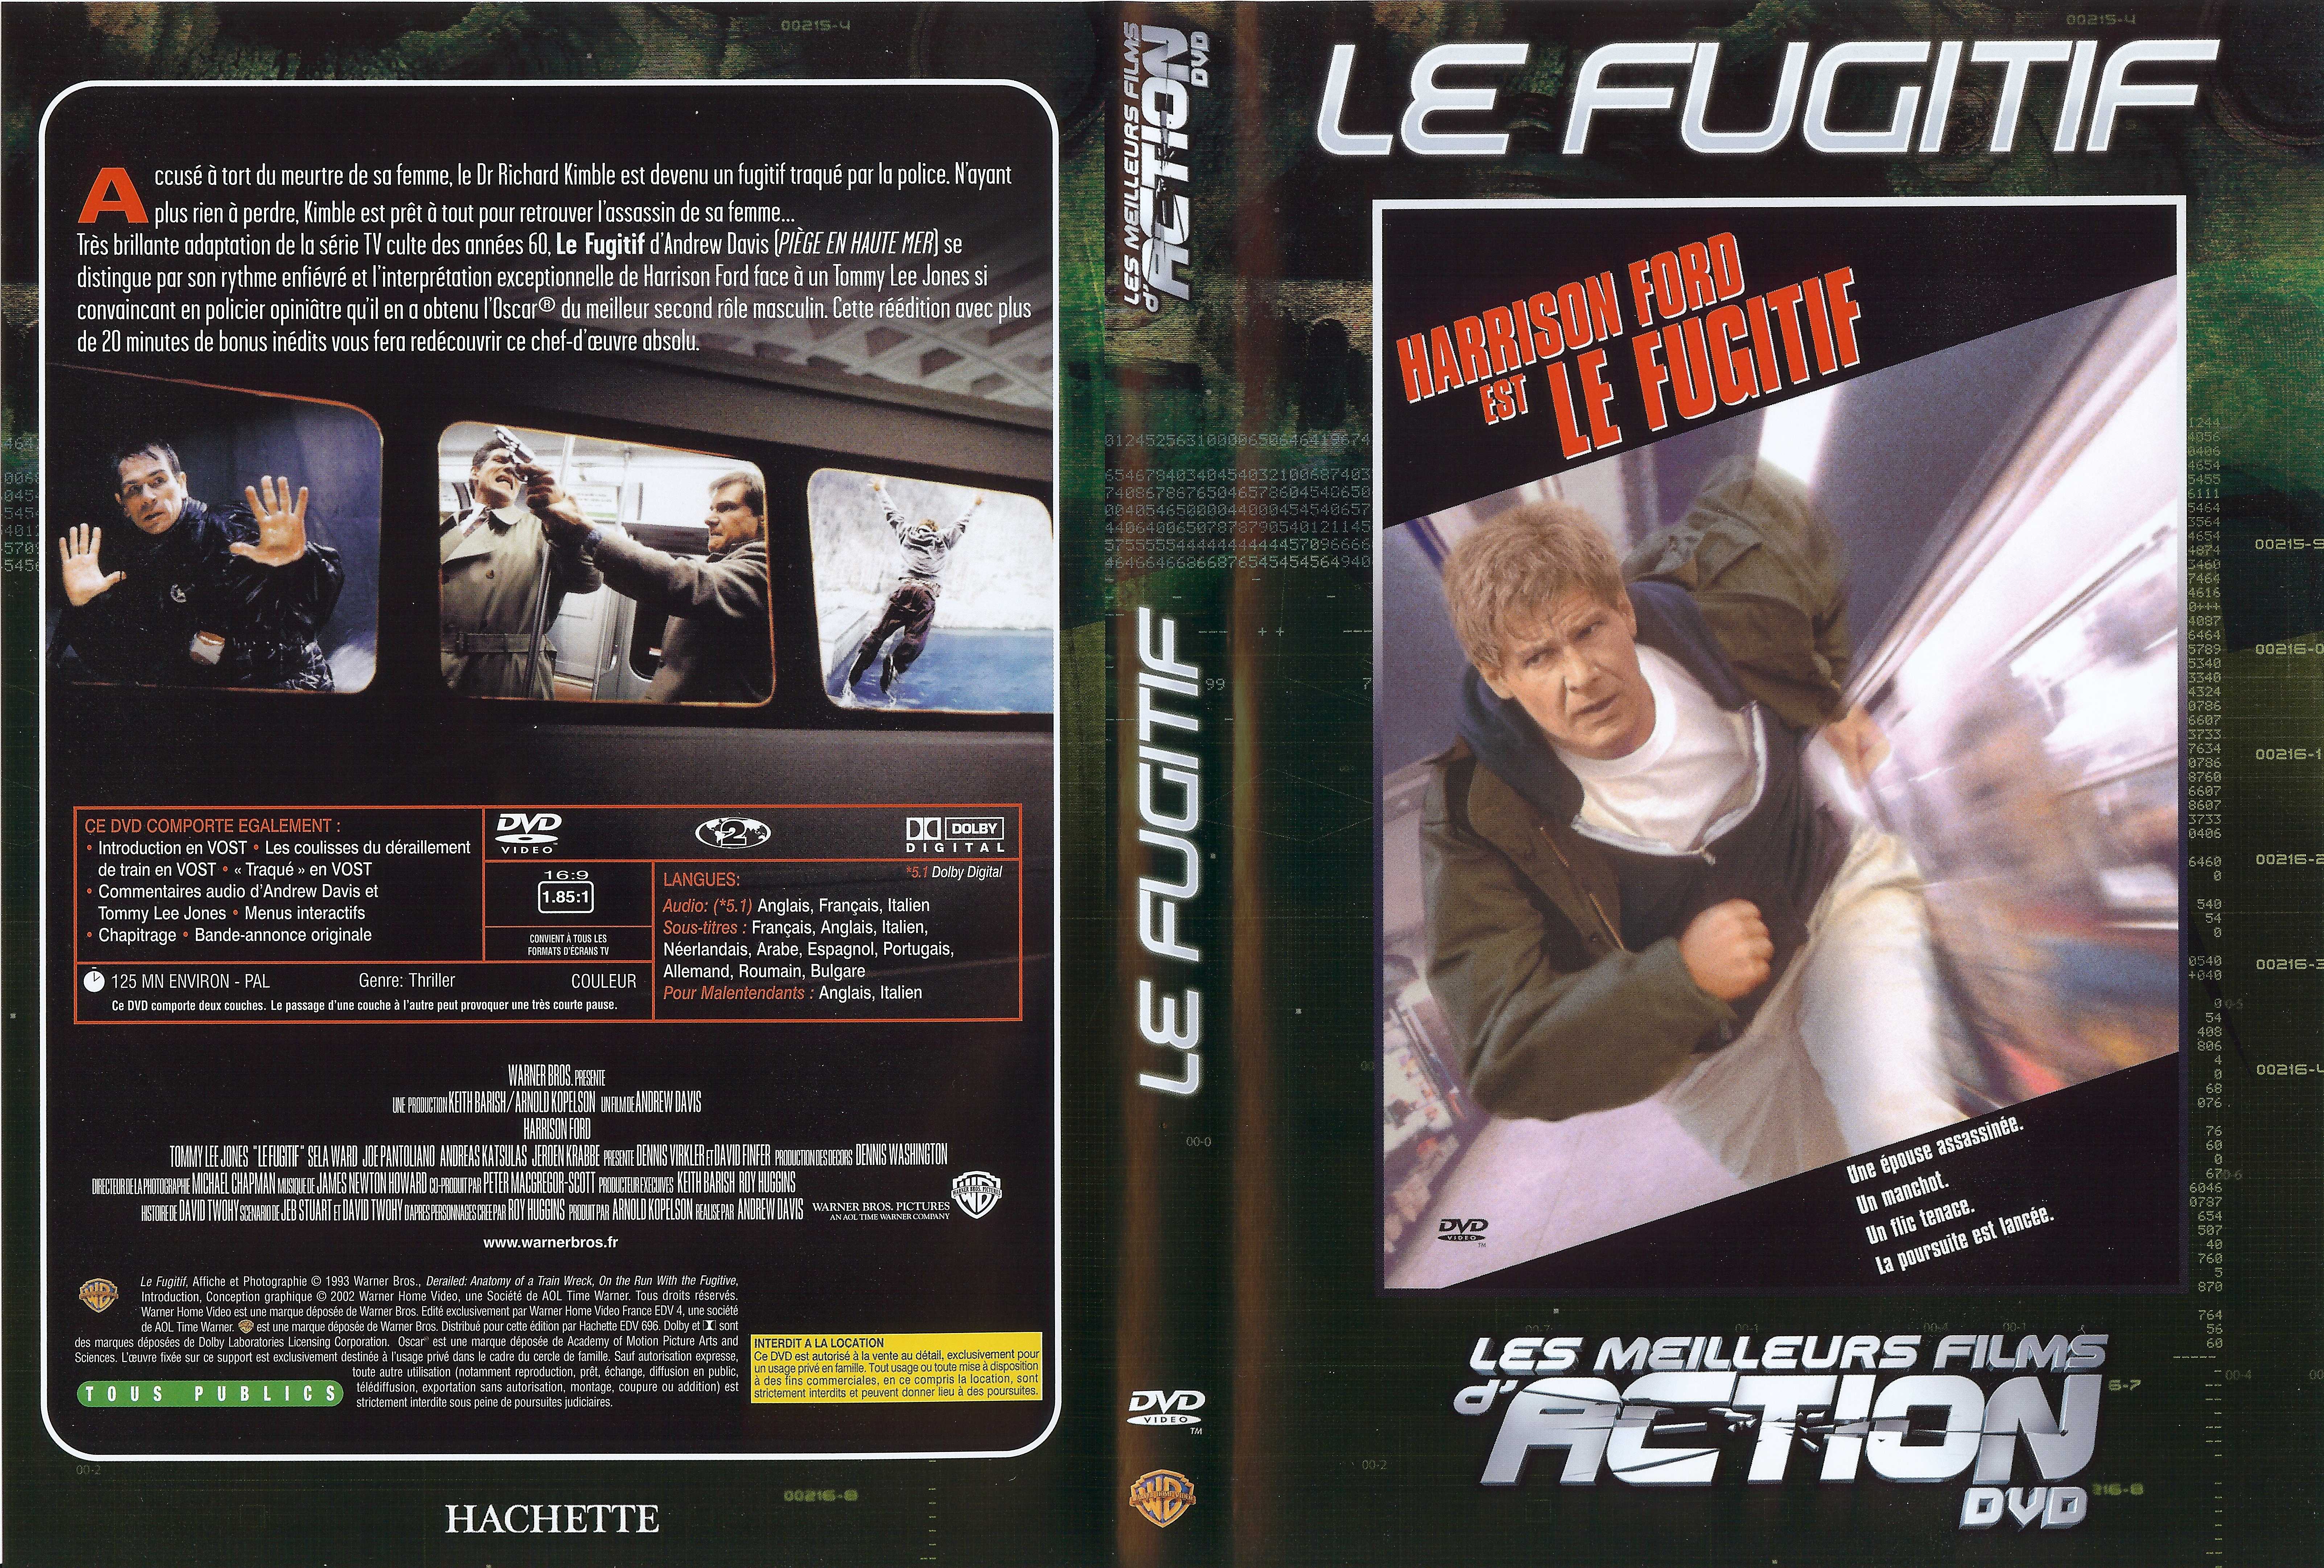 Jaquette DVD Le fugitif